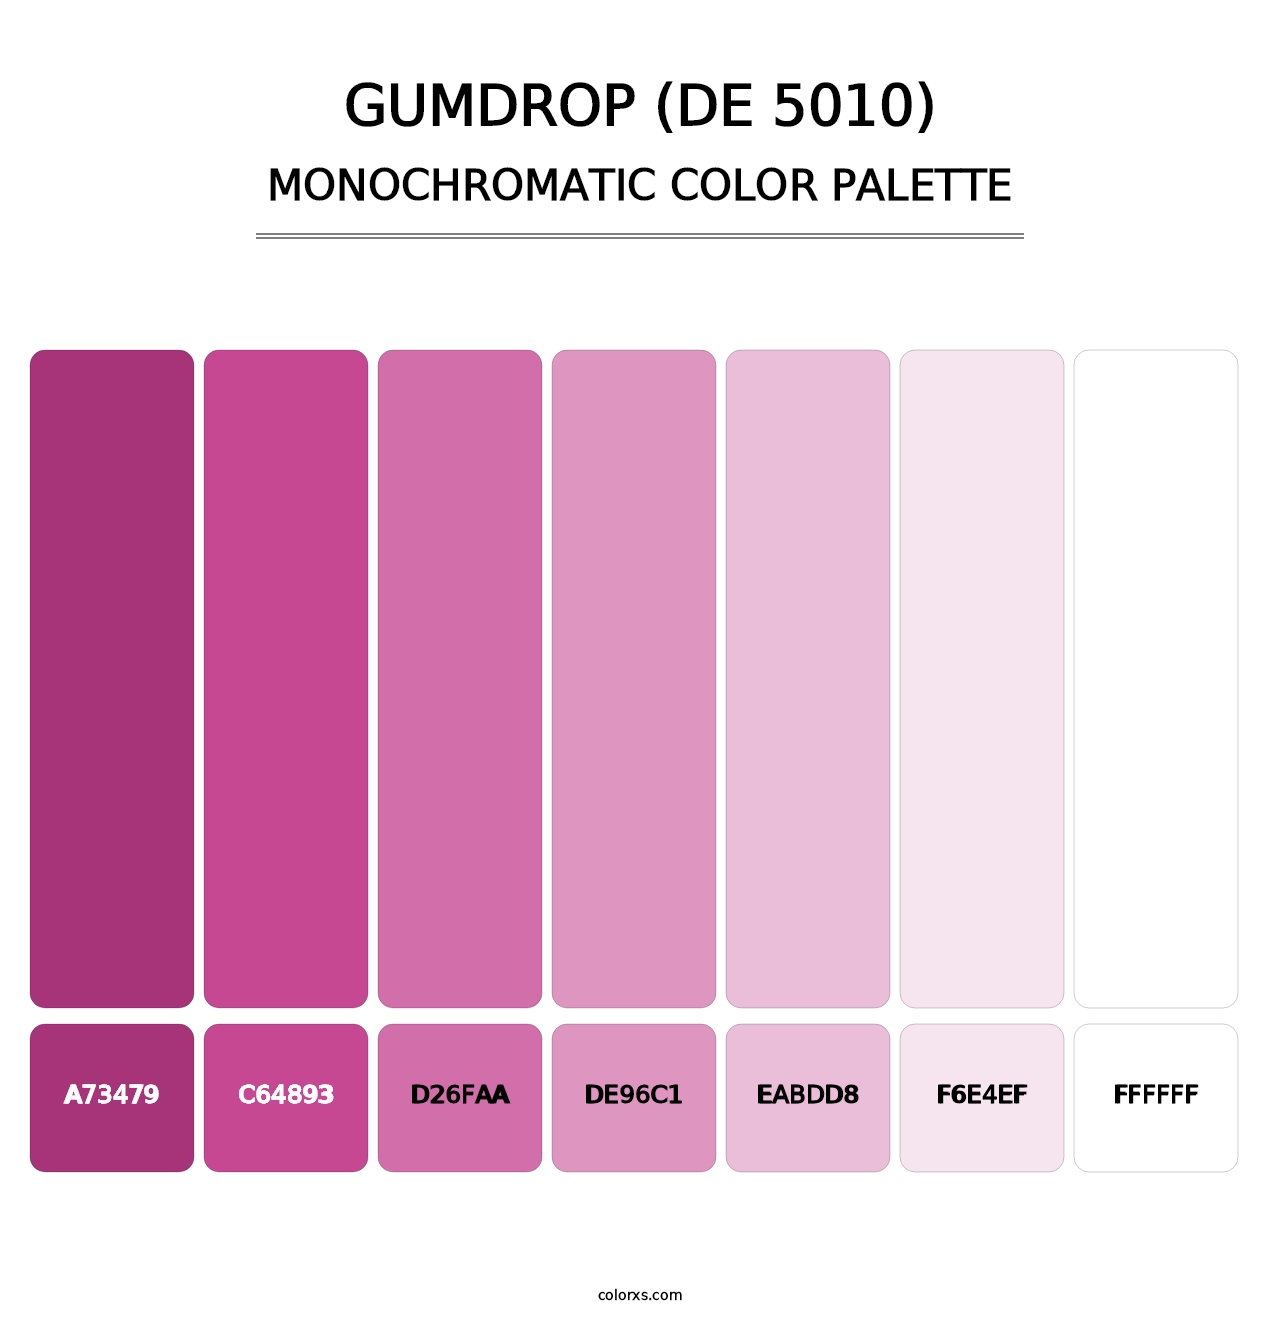 Gumdrop (DE 5010) - Monochromatic Color Palette